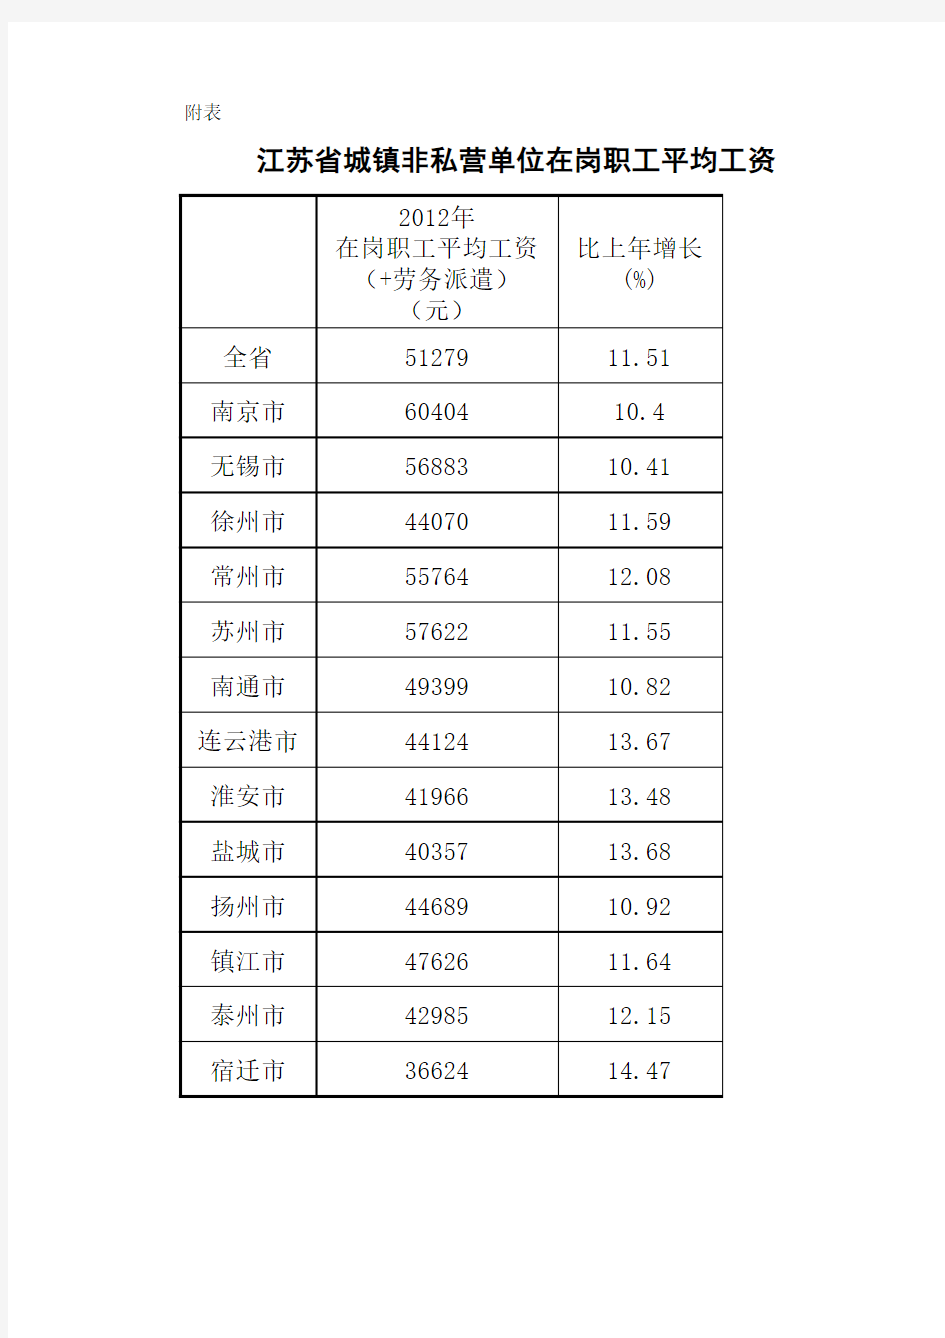 江苏省城镇非私营单位在岗职工平均工资情况表